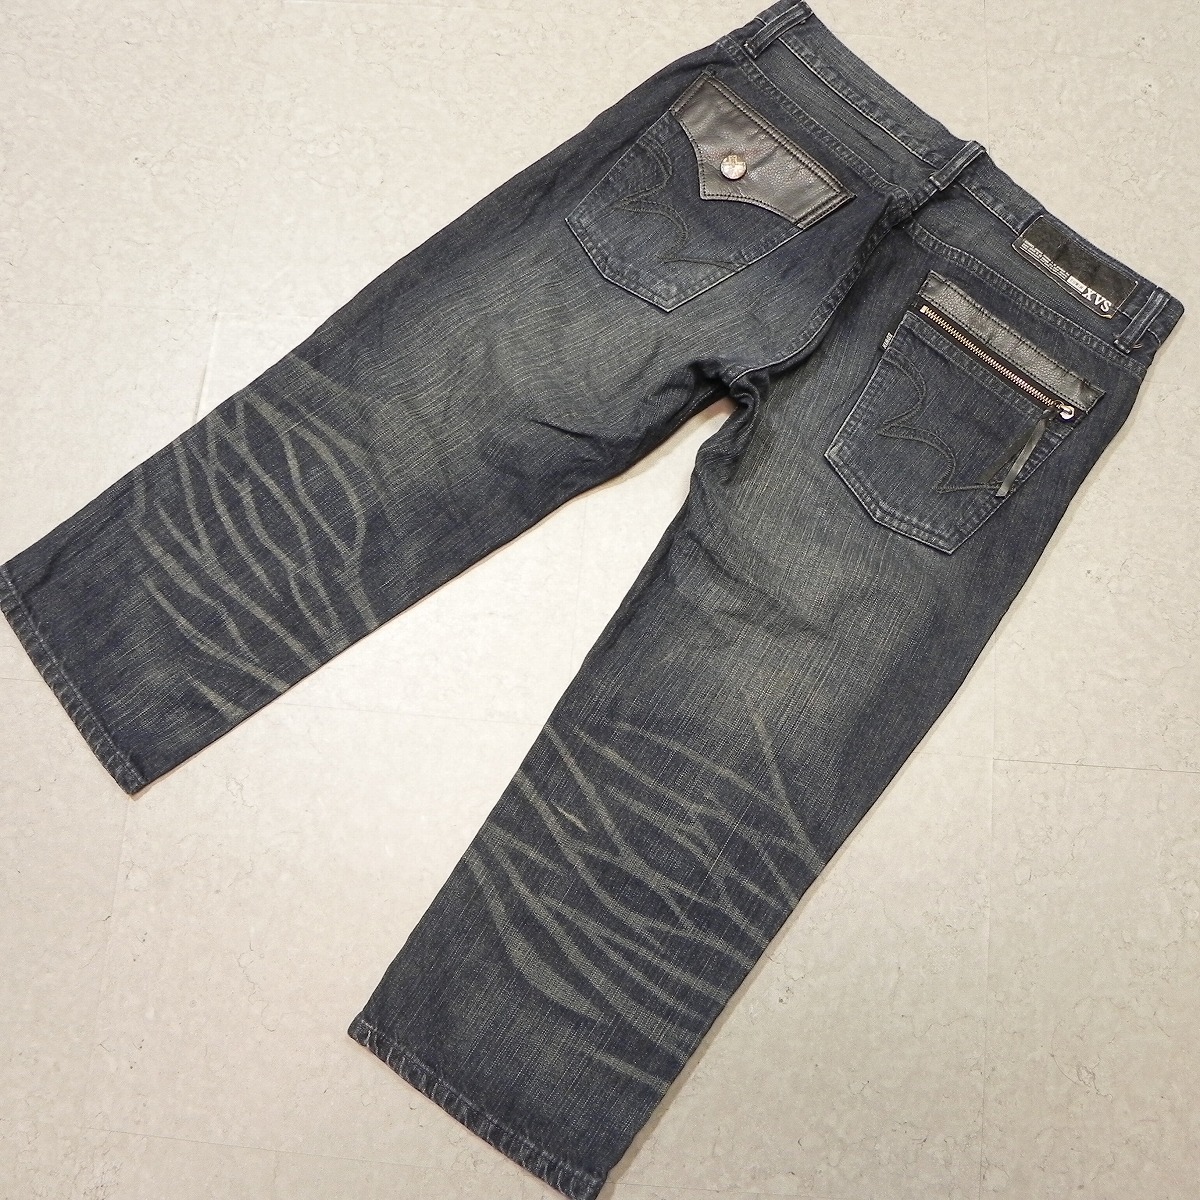 j378* EDWIN Edwin 4532 XVS * б/у обработка укороченные брюки Denim брюки джинсы Sz.32 быстрое решение *